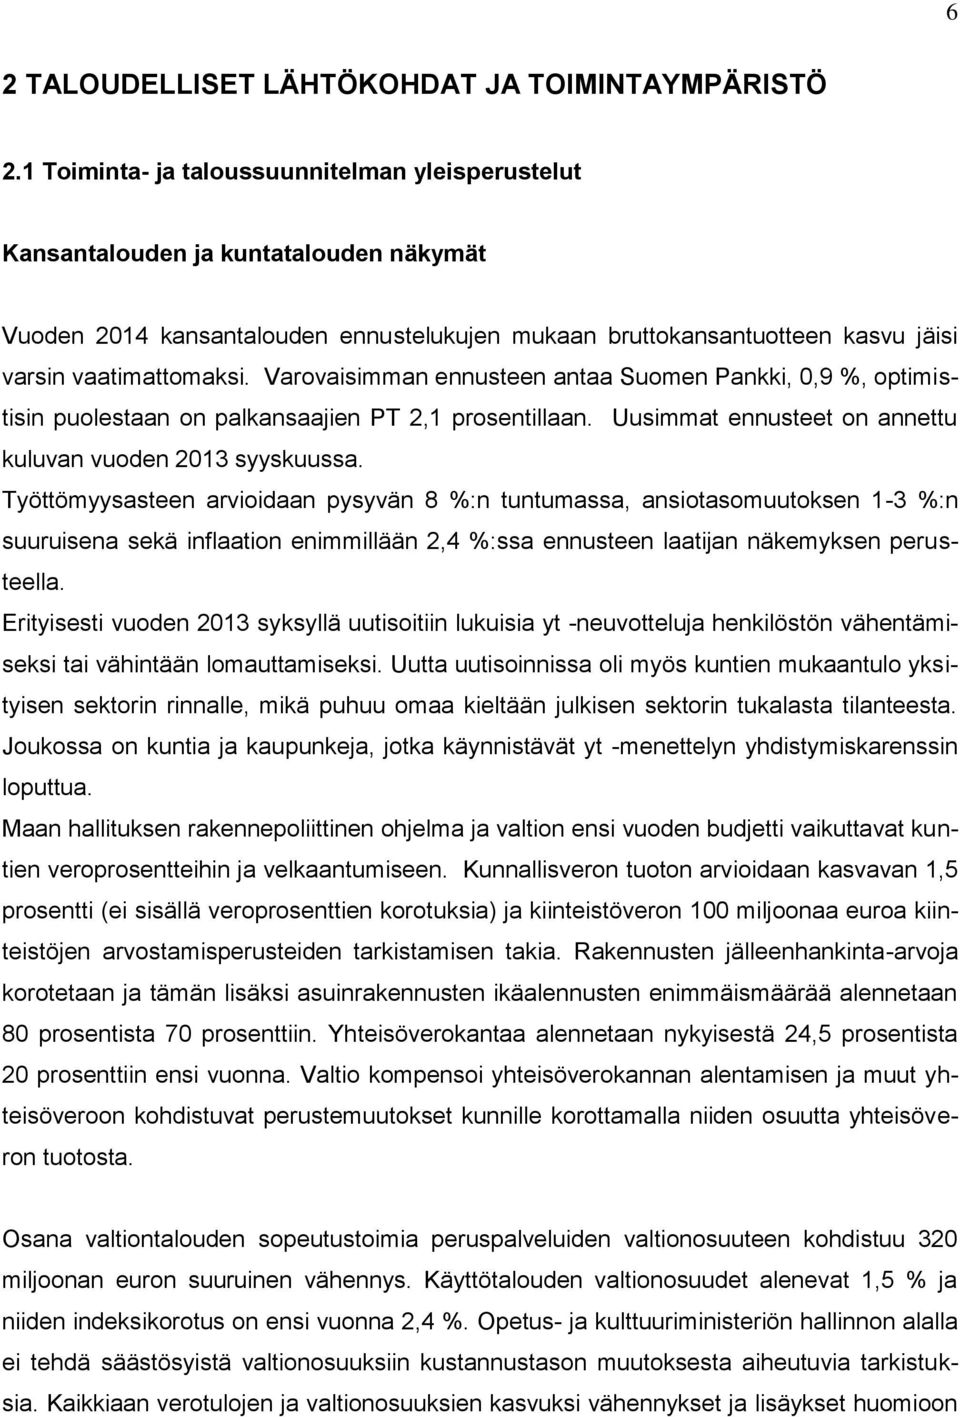 Varovaisimman ennusteen antaa Suomen Pankki, 0,9 %, optimistisin puolestaan on palkansaajien PT 2,1 prosentillaan. Uusimmat ennusteet on annettu kuluvan vuoden 2013 syyskuussa.